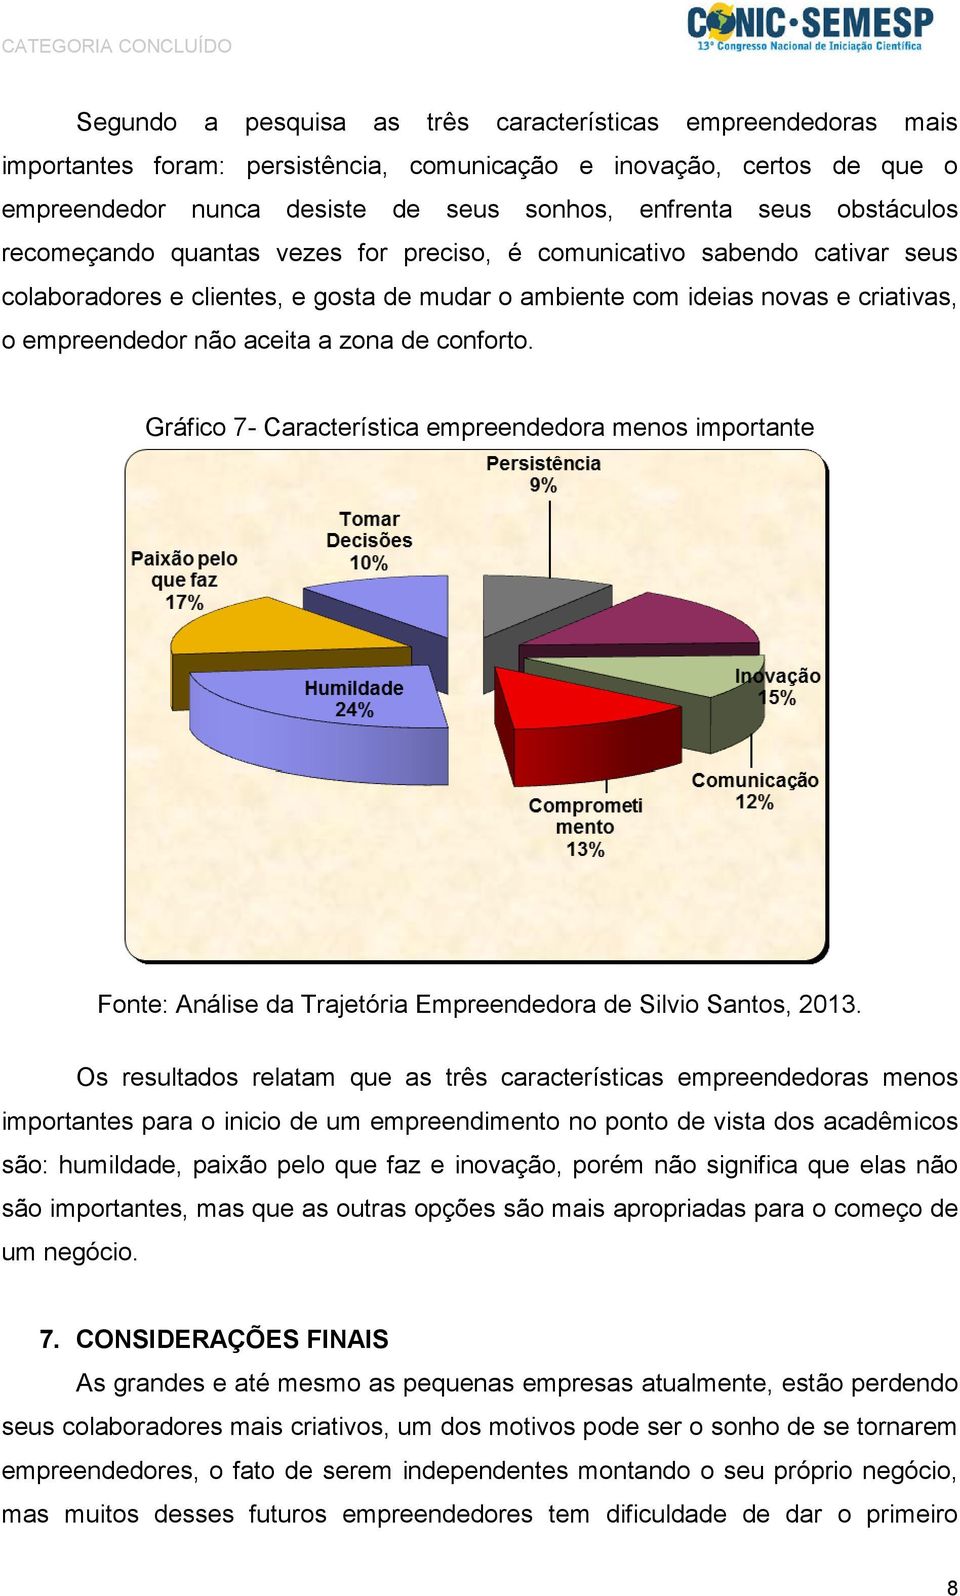 zona de conforto. Gráfico 7- Característica empreendedora menos importante Fonte: Análise da Trajetória Empreendedora de Silvio Santos, 2013.